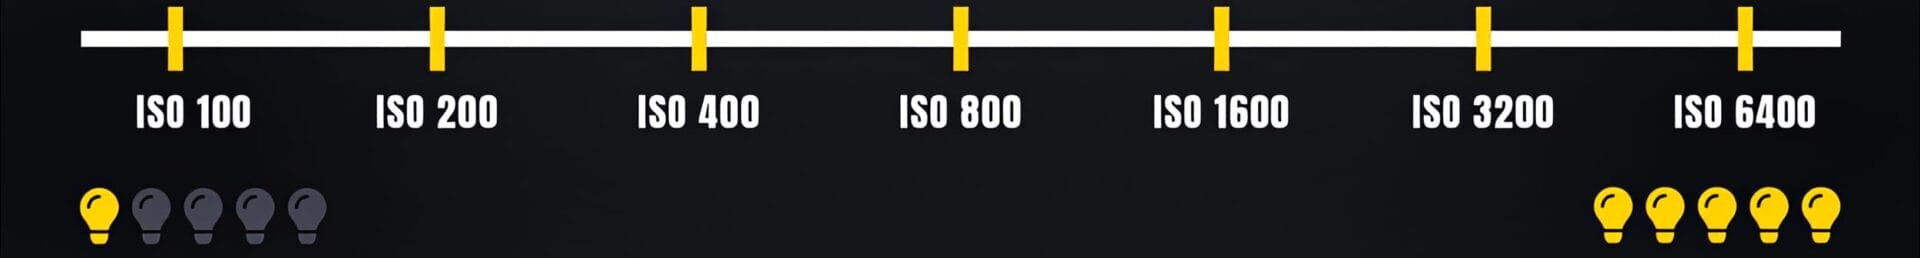 L'Essentiel sur l'ISO 